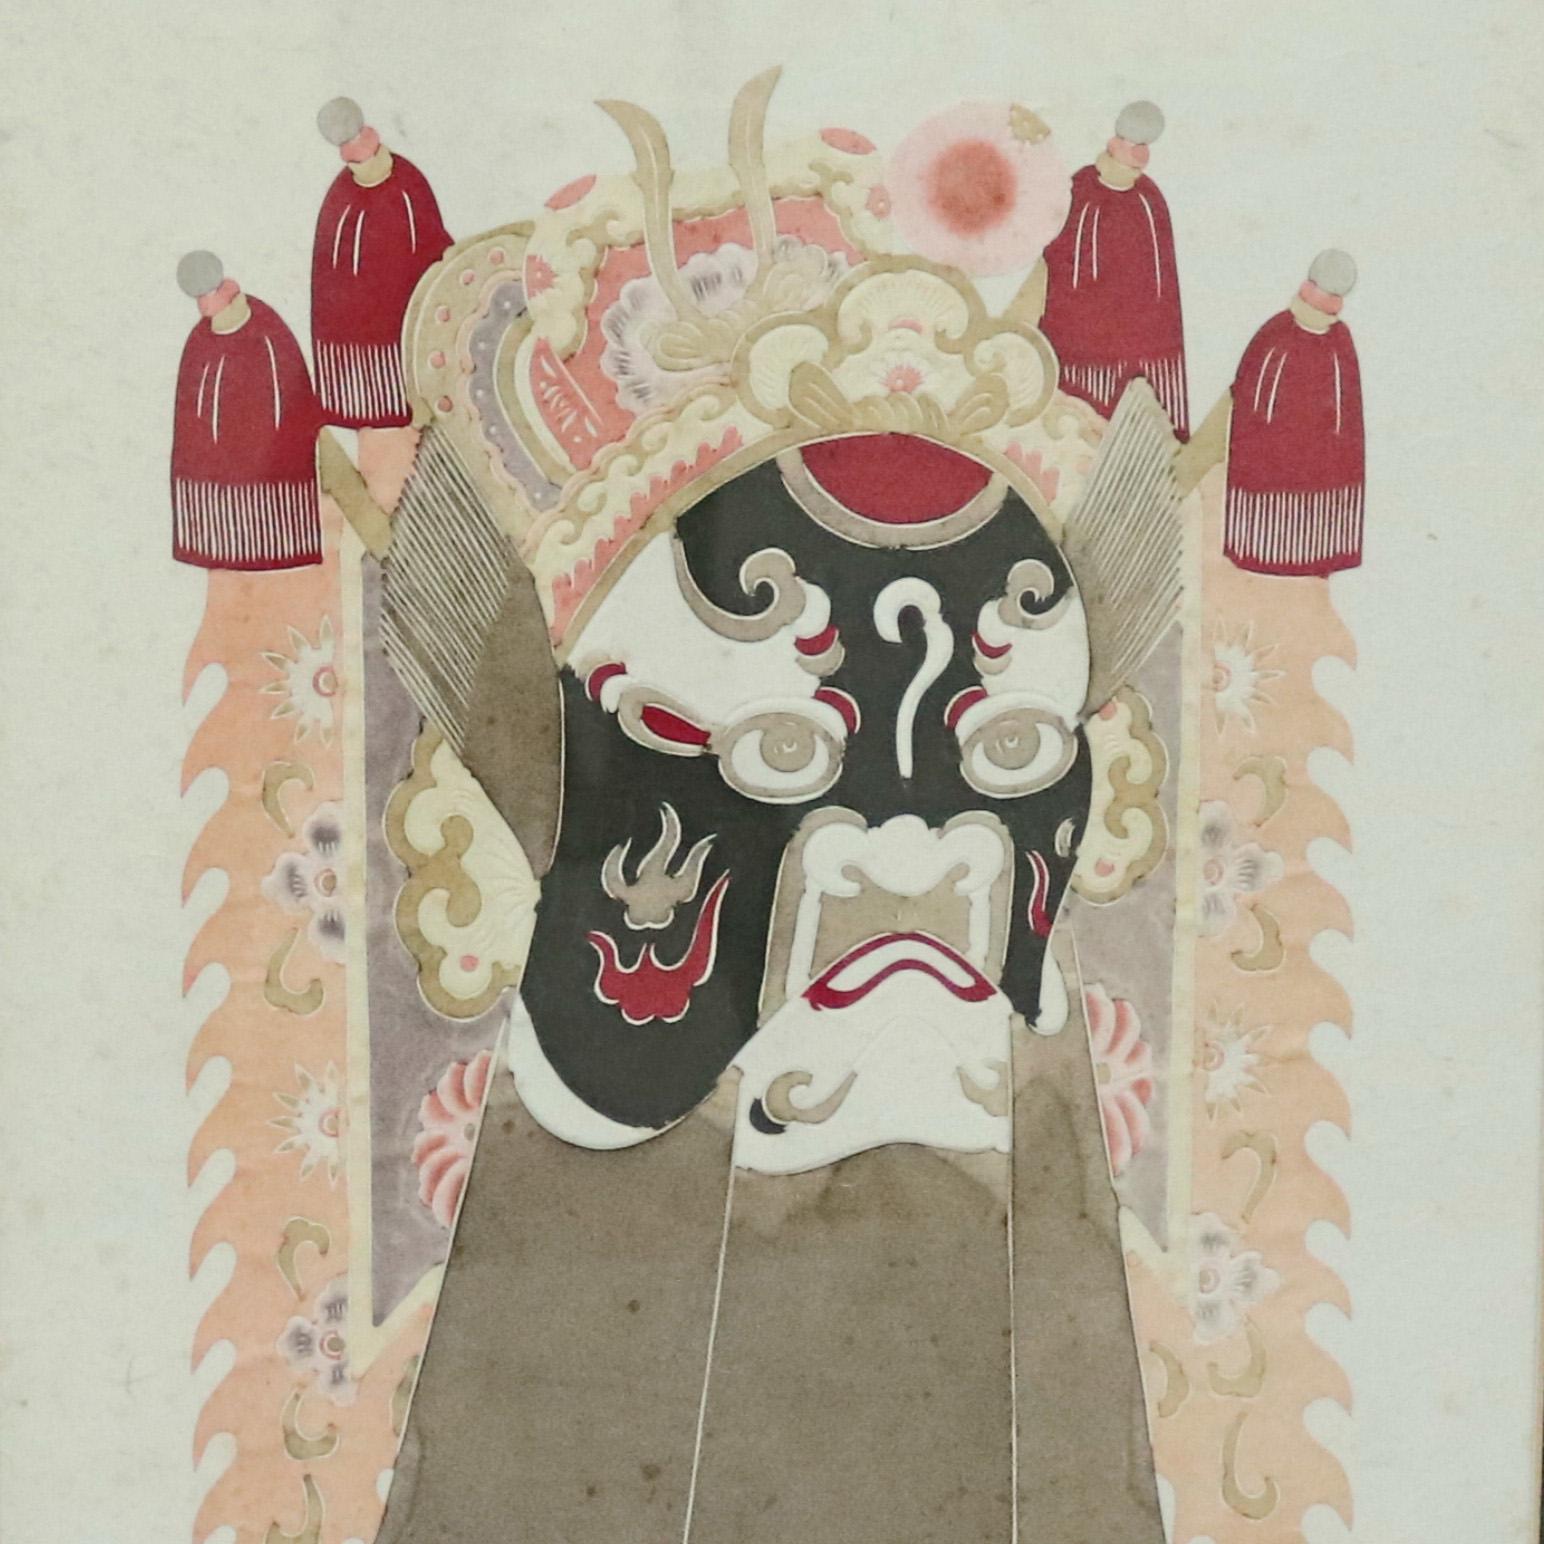 Une impression chinoise encadrée offre une représentation mixte d'un masque de divinité cérémoniale, 20e siècle.

Mesures - 18